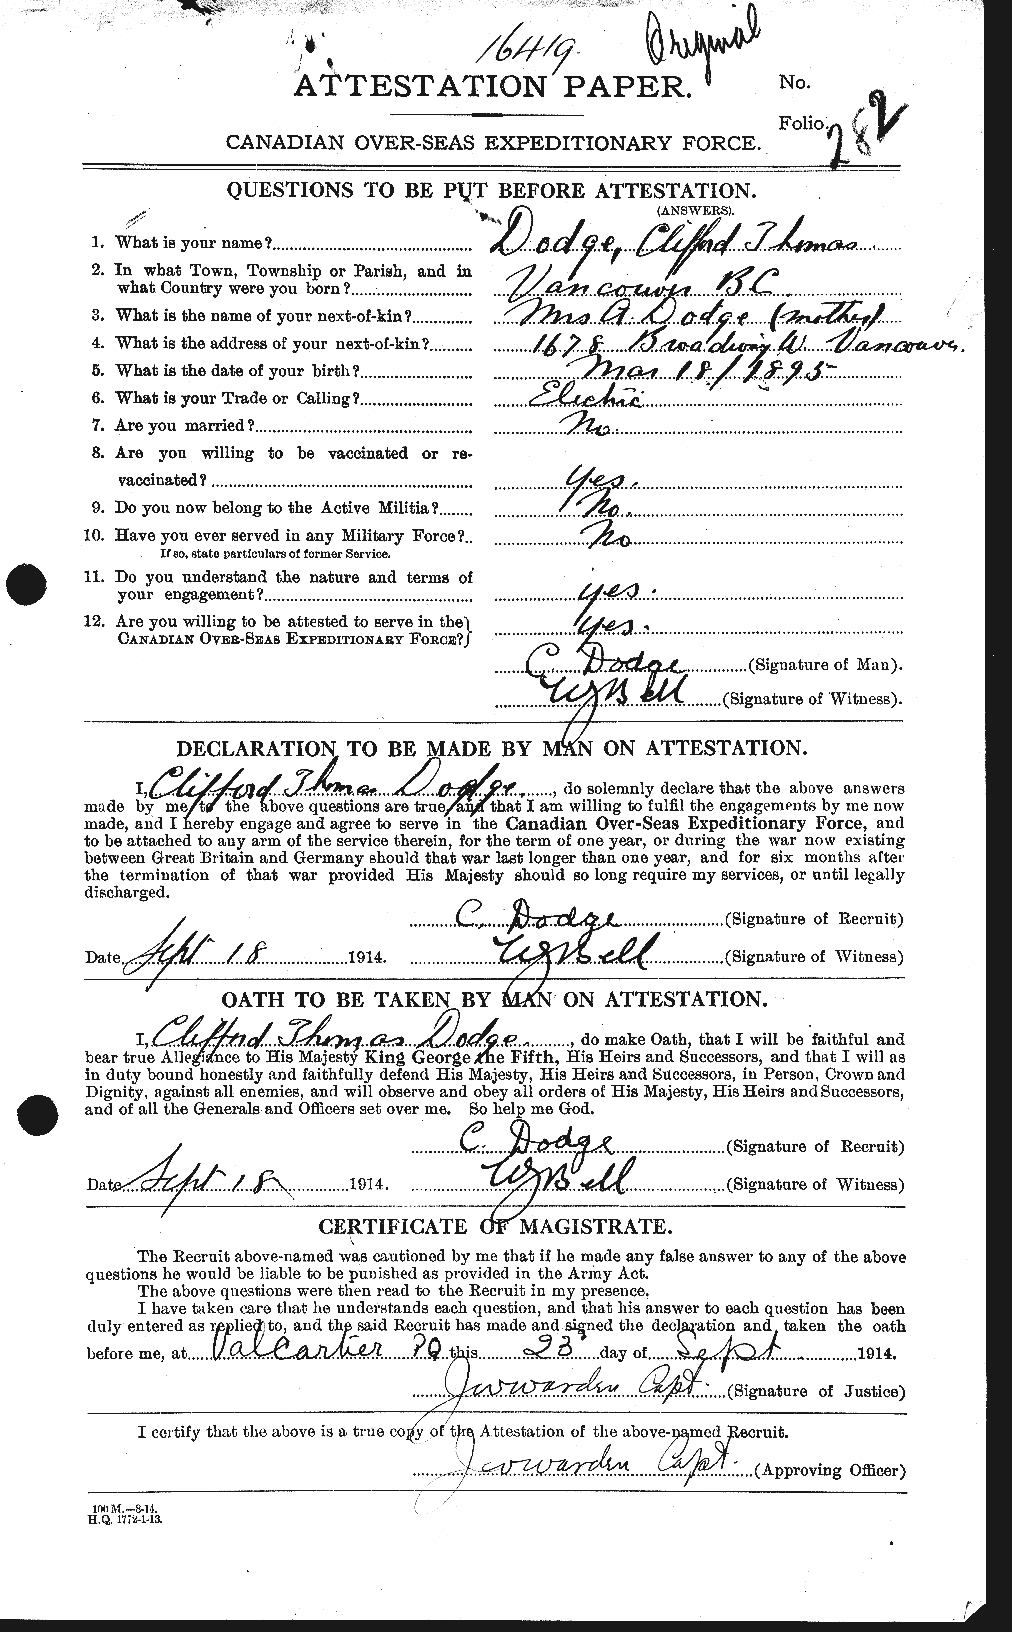 Dossiers du Personnel de la Première Guerre mondiale - CEC 294459a